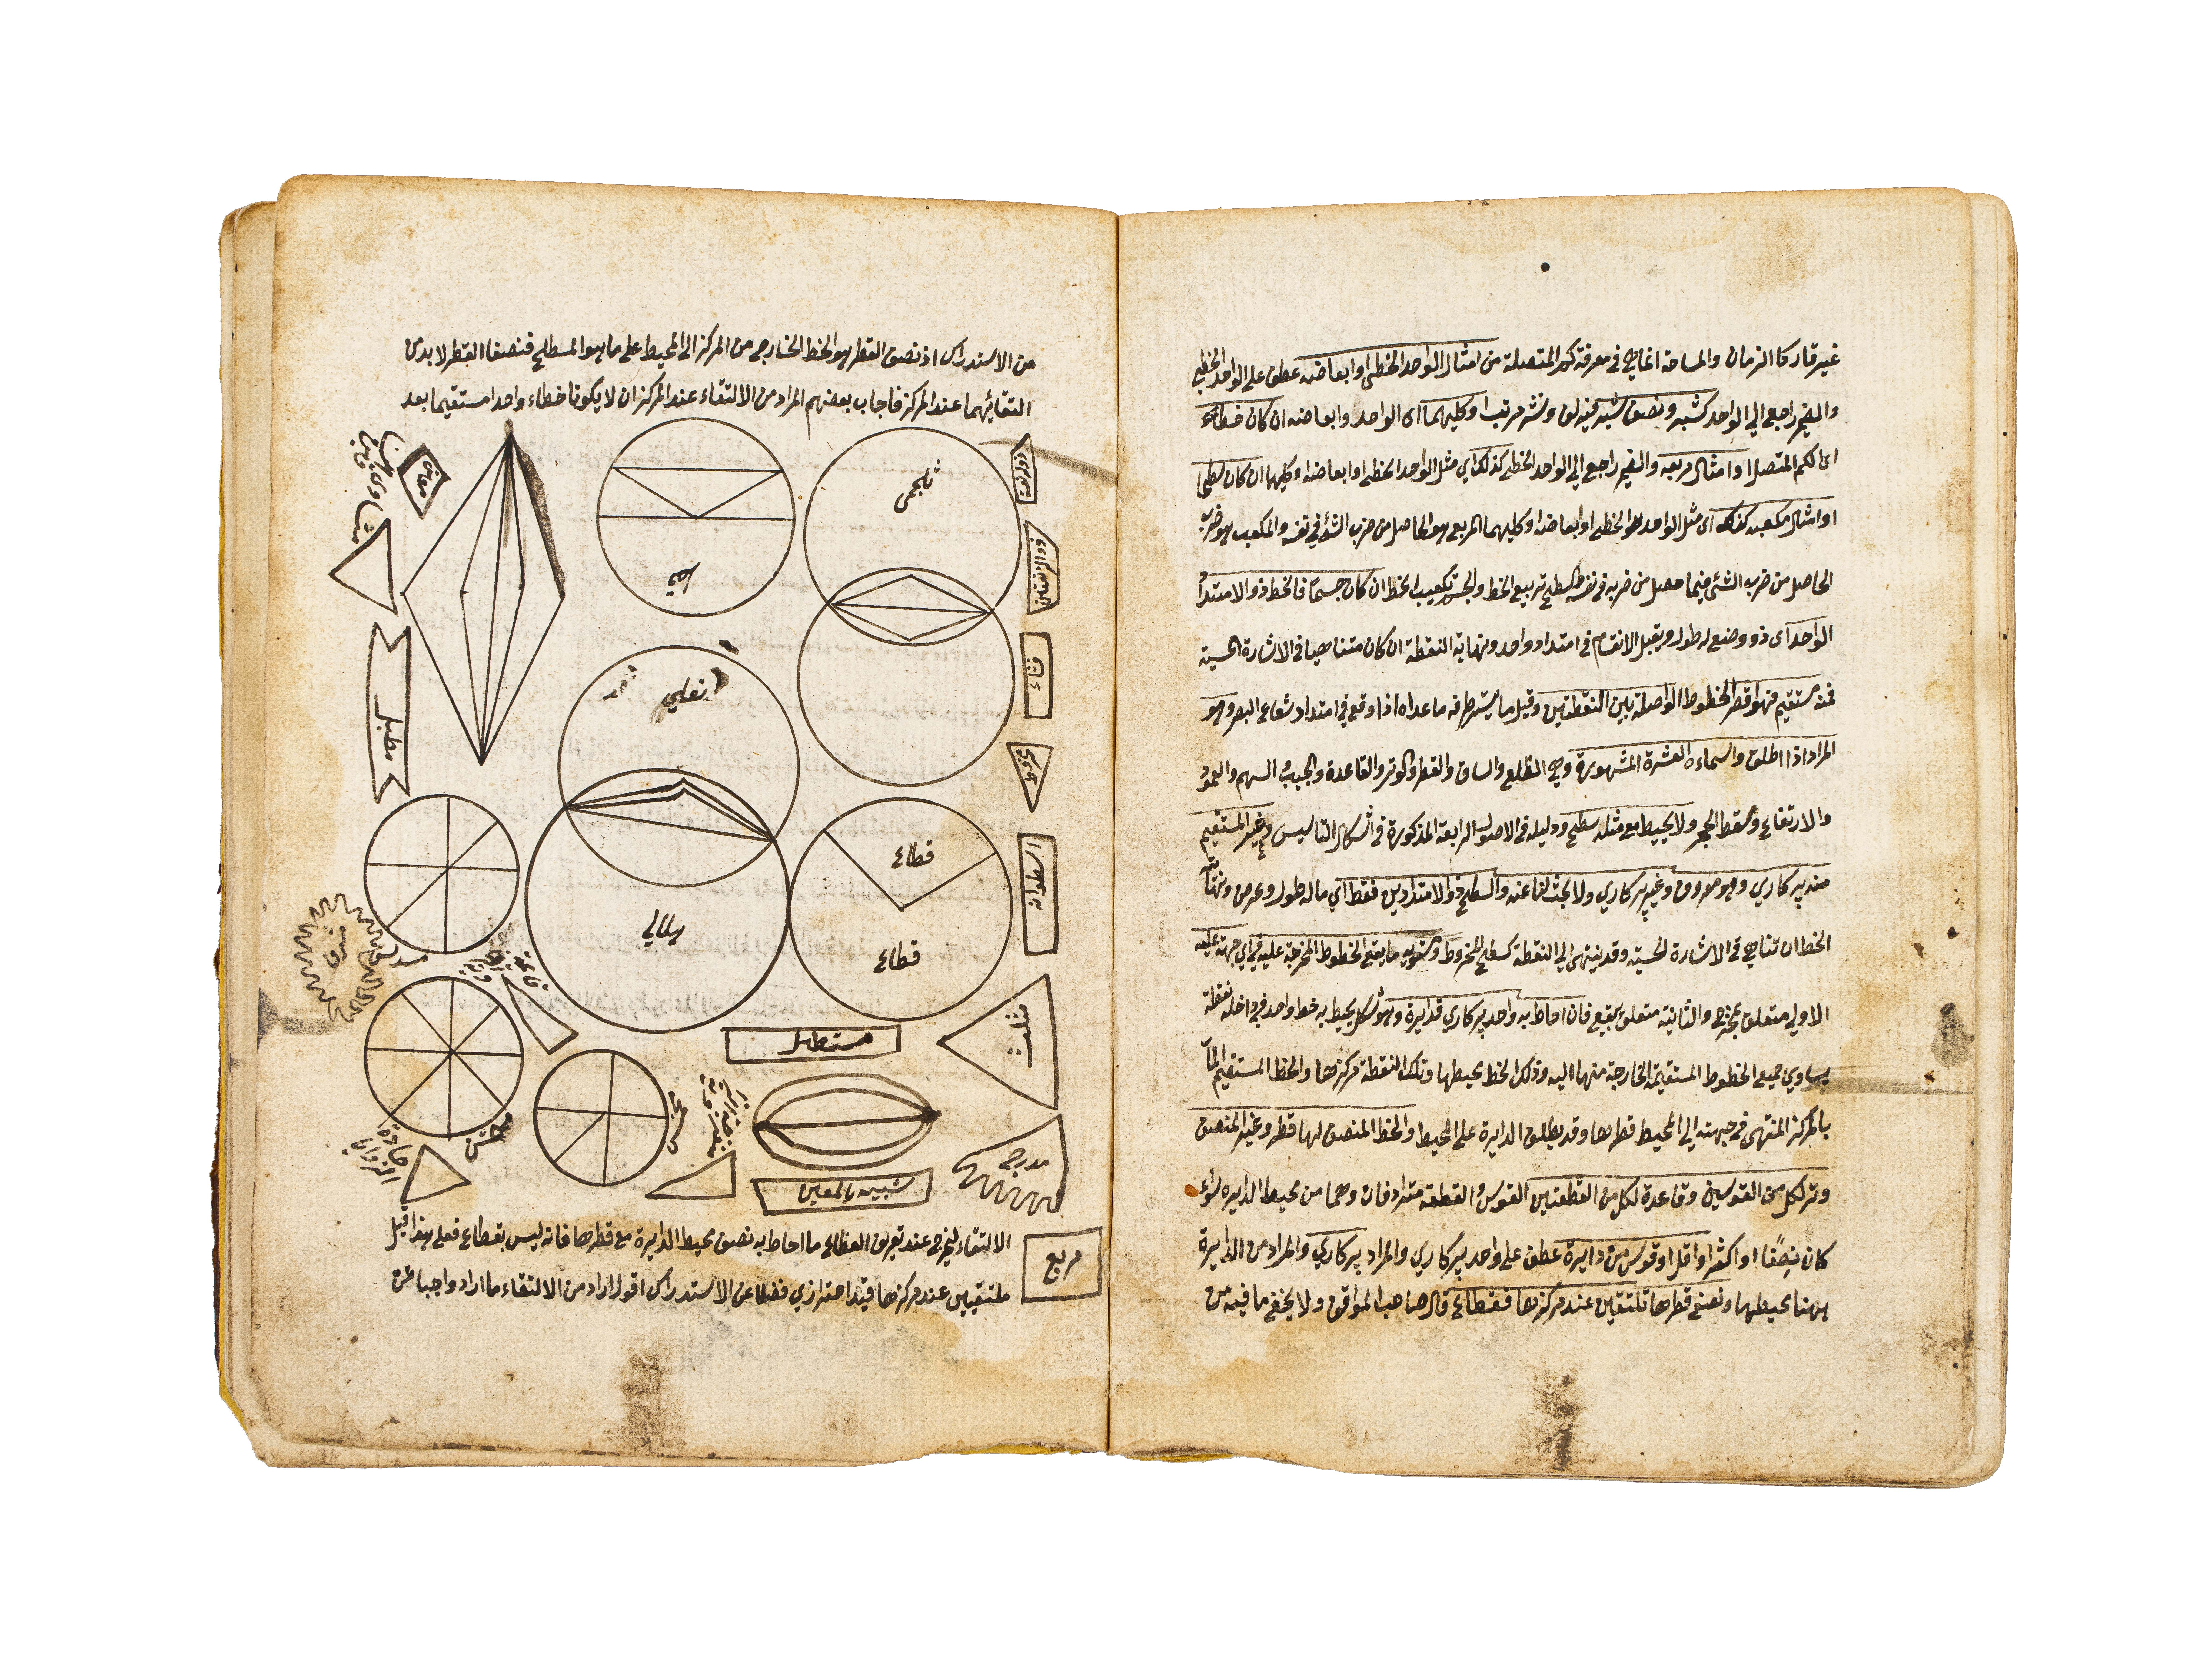 NUZHAT ALEUQUL WA- ALBAB LI MARIFAT AL-HISAB, COPIED BY BARAK BIN MATALK AL-RASHDI IN 1250AH